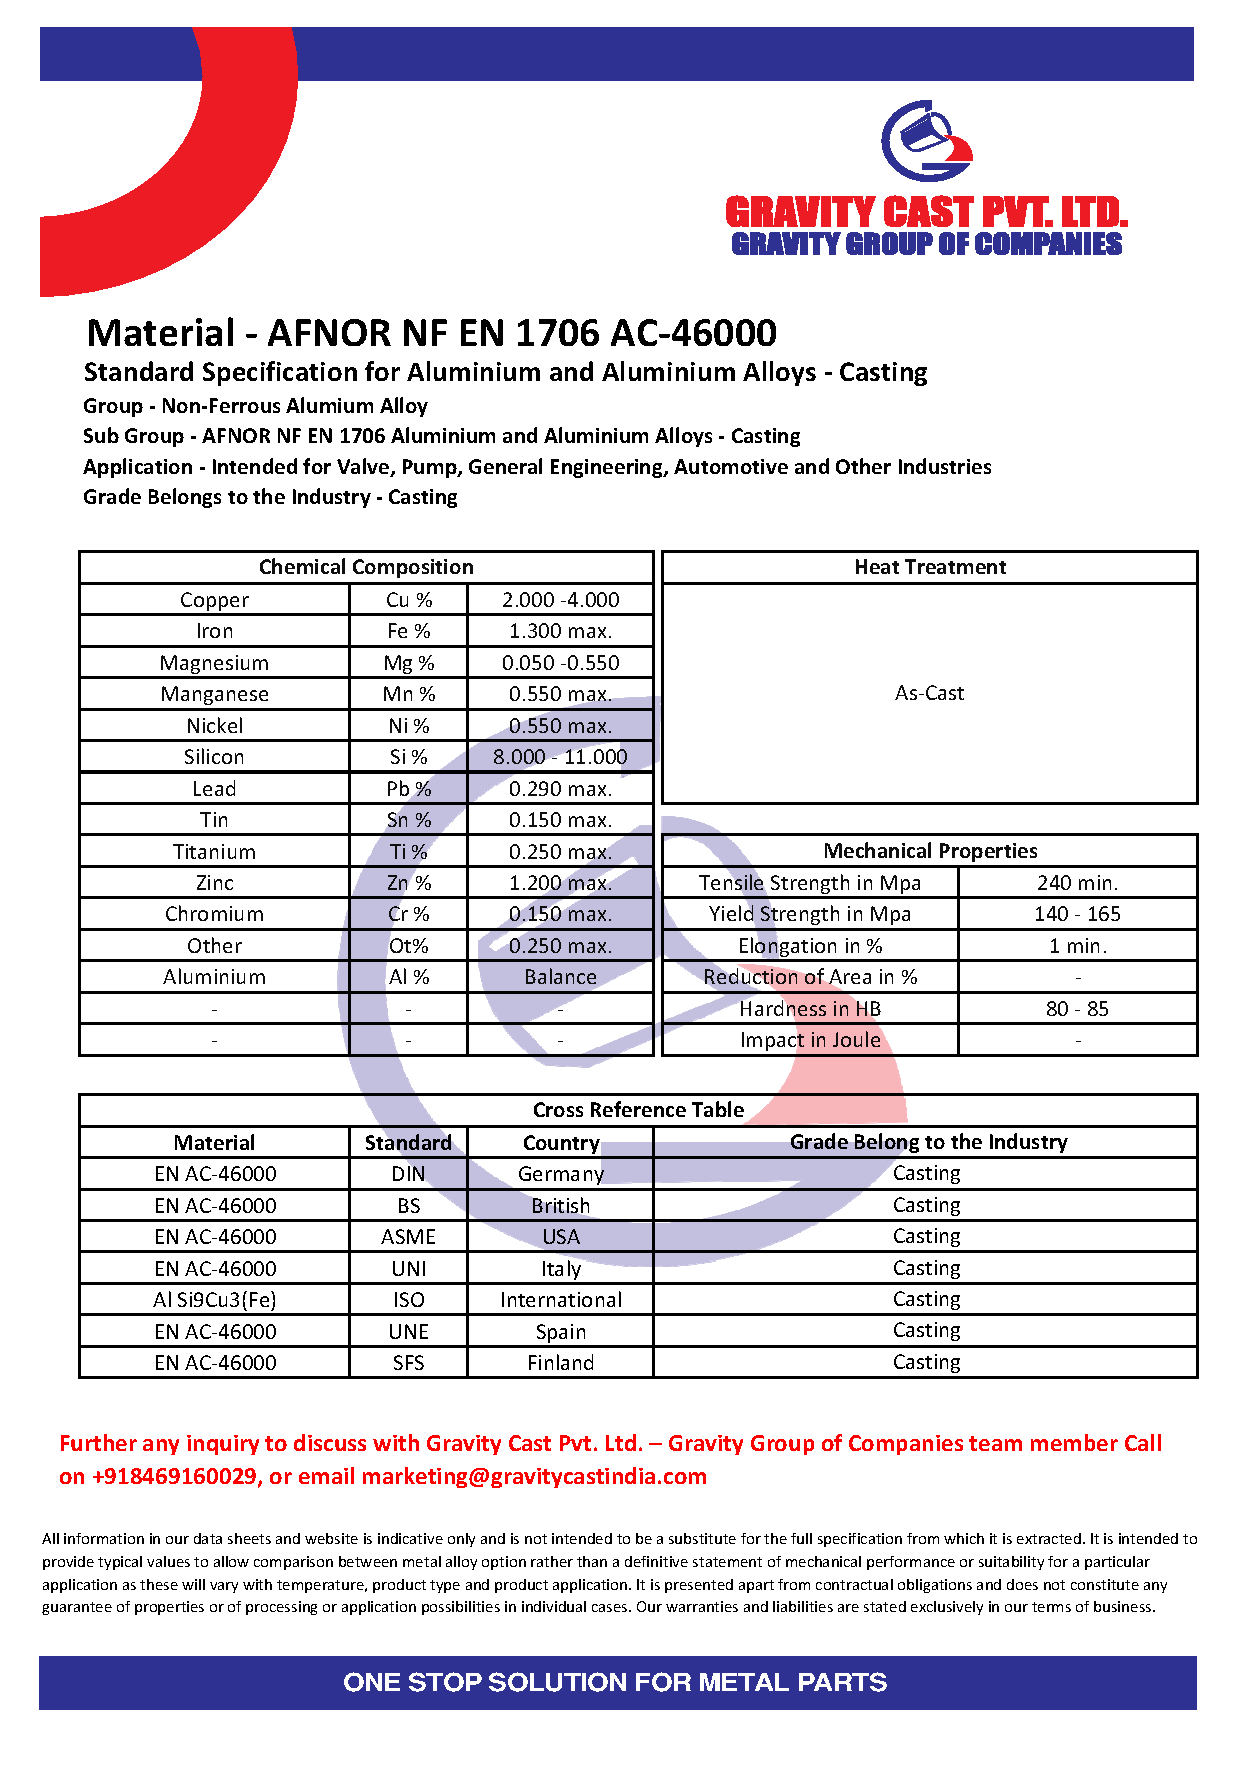 AFNOR NF EN 1706 AC-46000.pdf